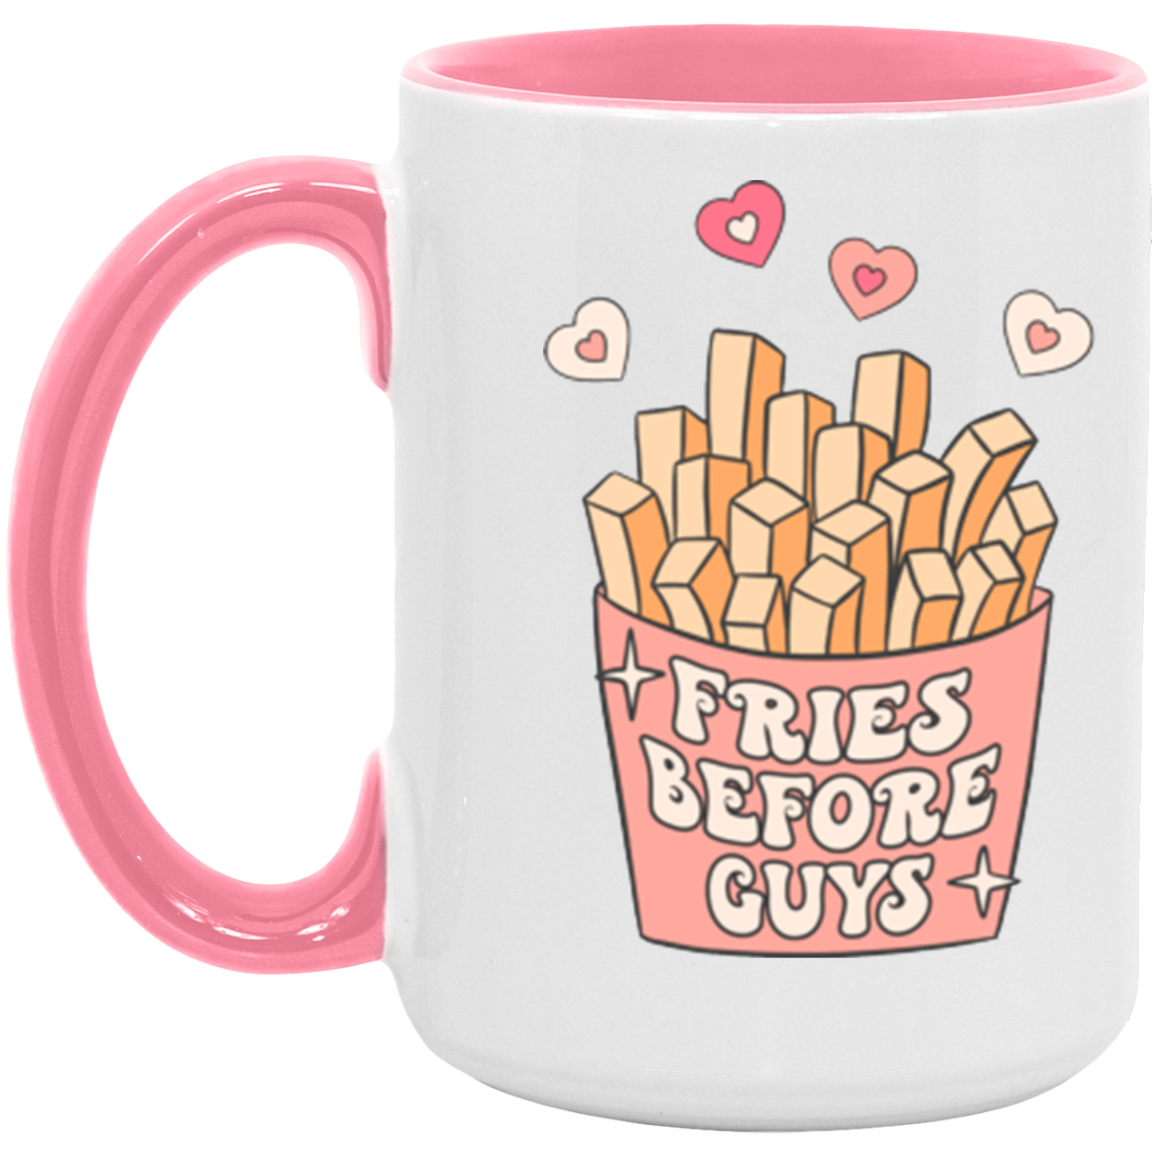 Fries Before Guys Mug